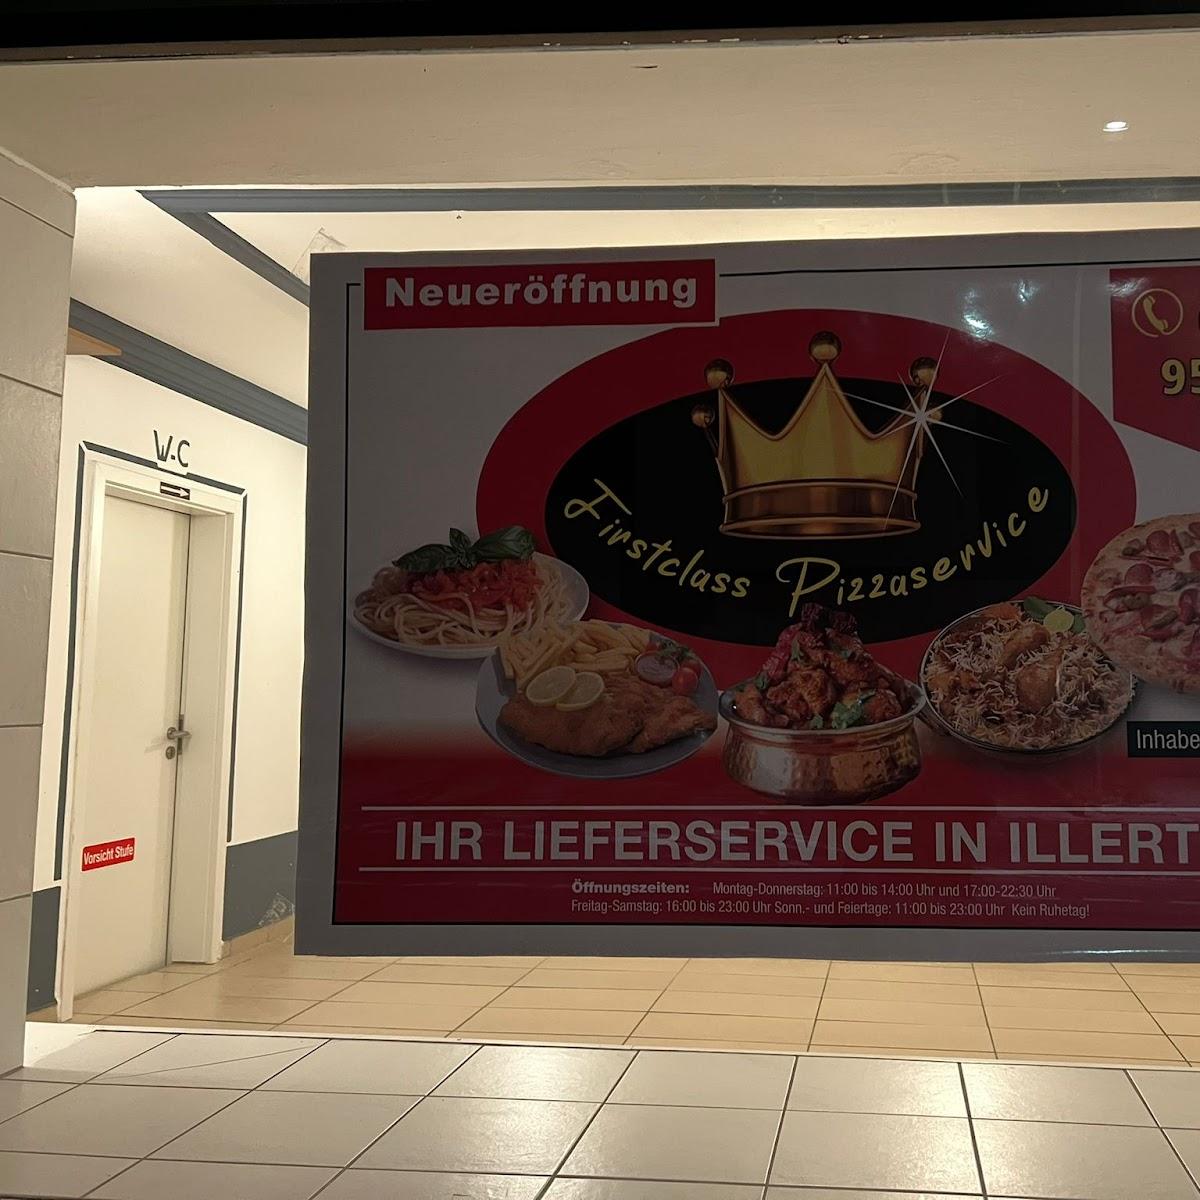 Restaurant "FirstClass Pizza Service" in Illertissen